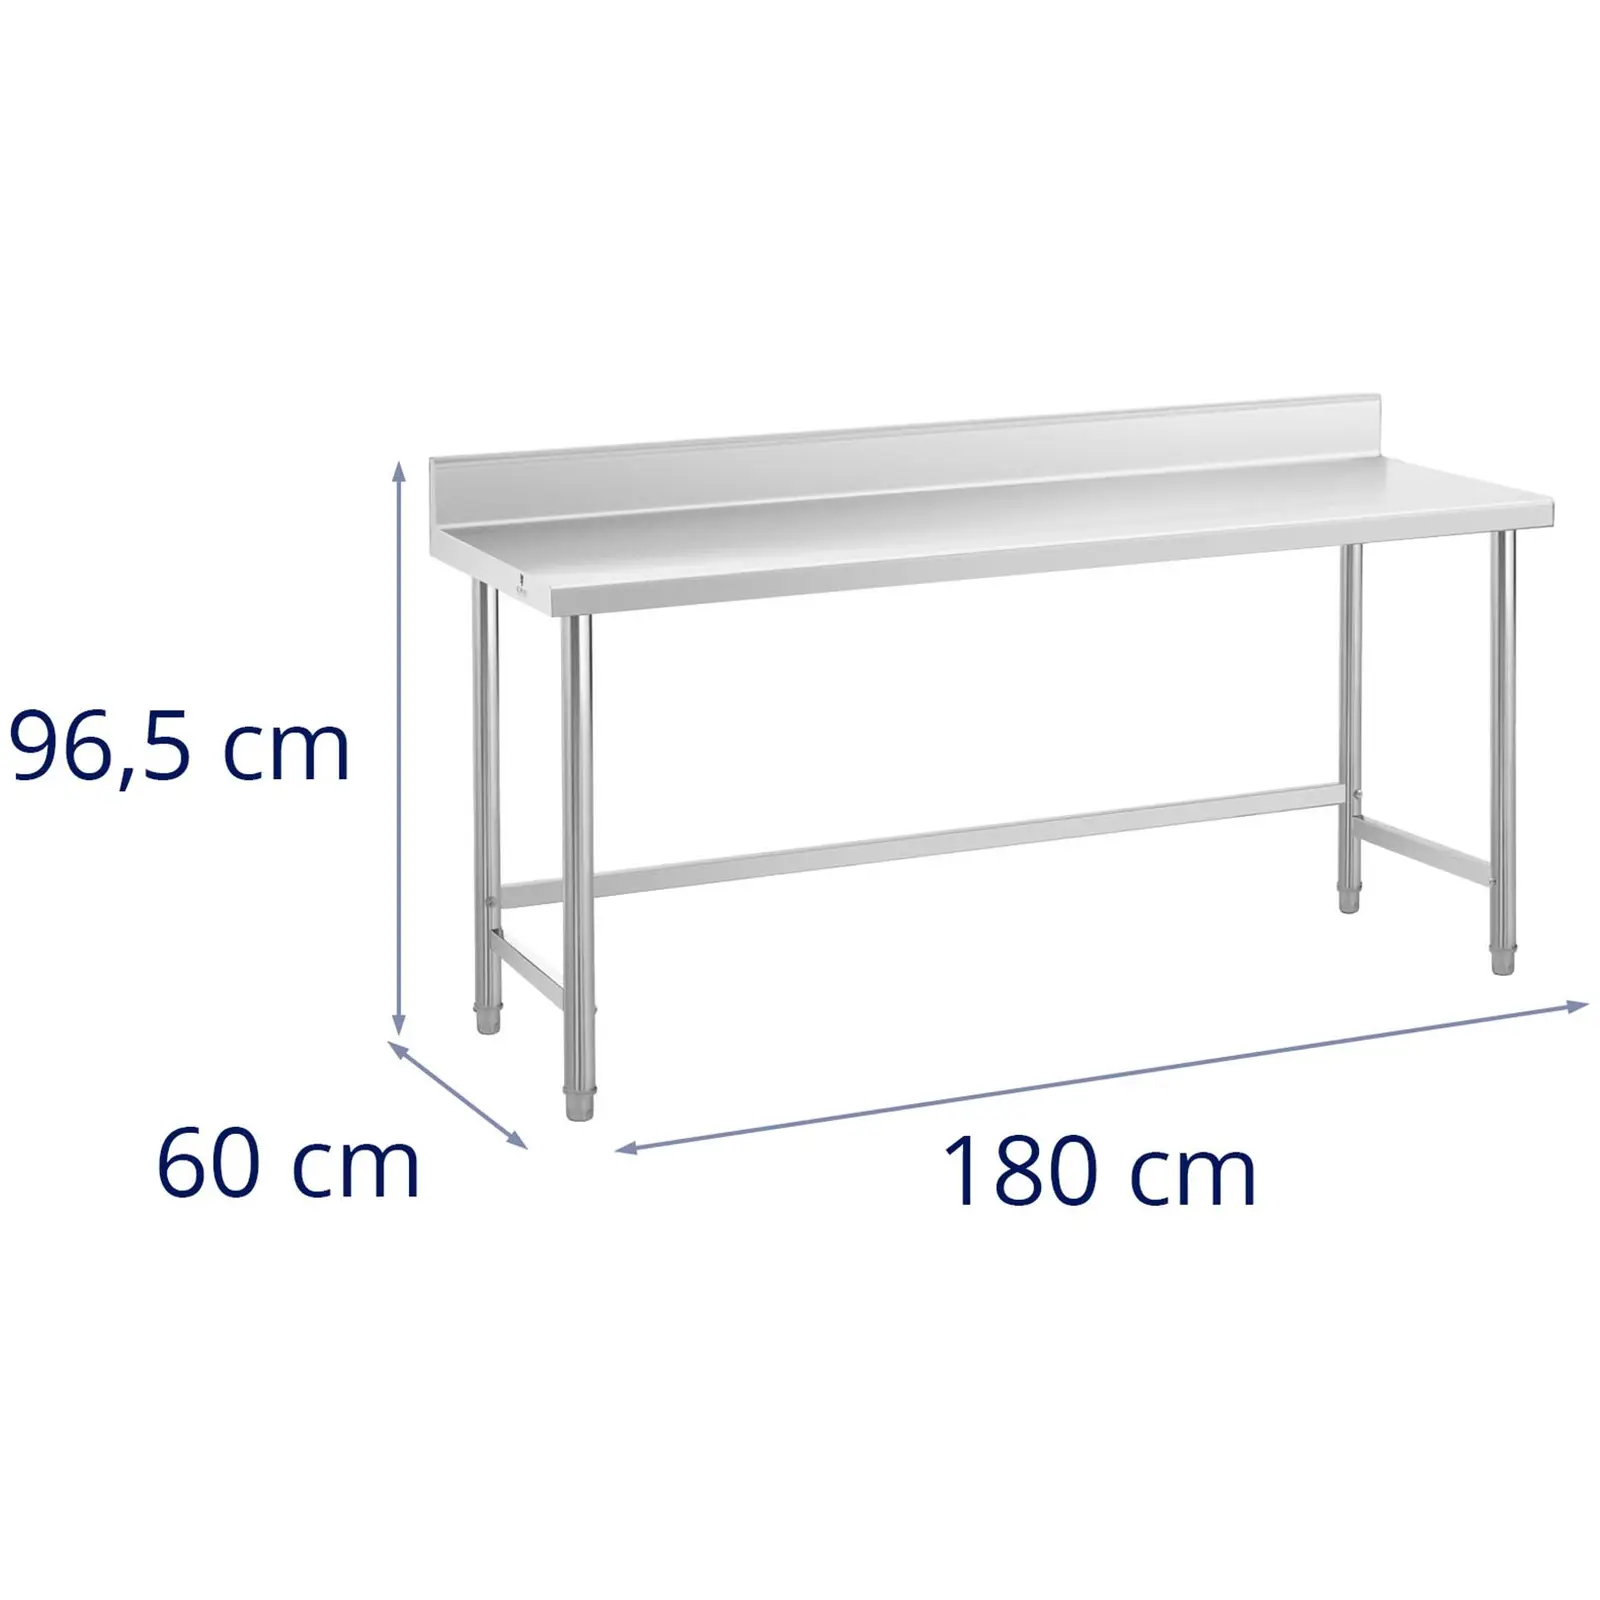 Rozsdamentes acél asztal - 180 x 60 cm - hátsó perem - terhelhetőség: 95 kg - Royal Catering